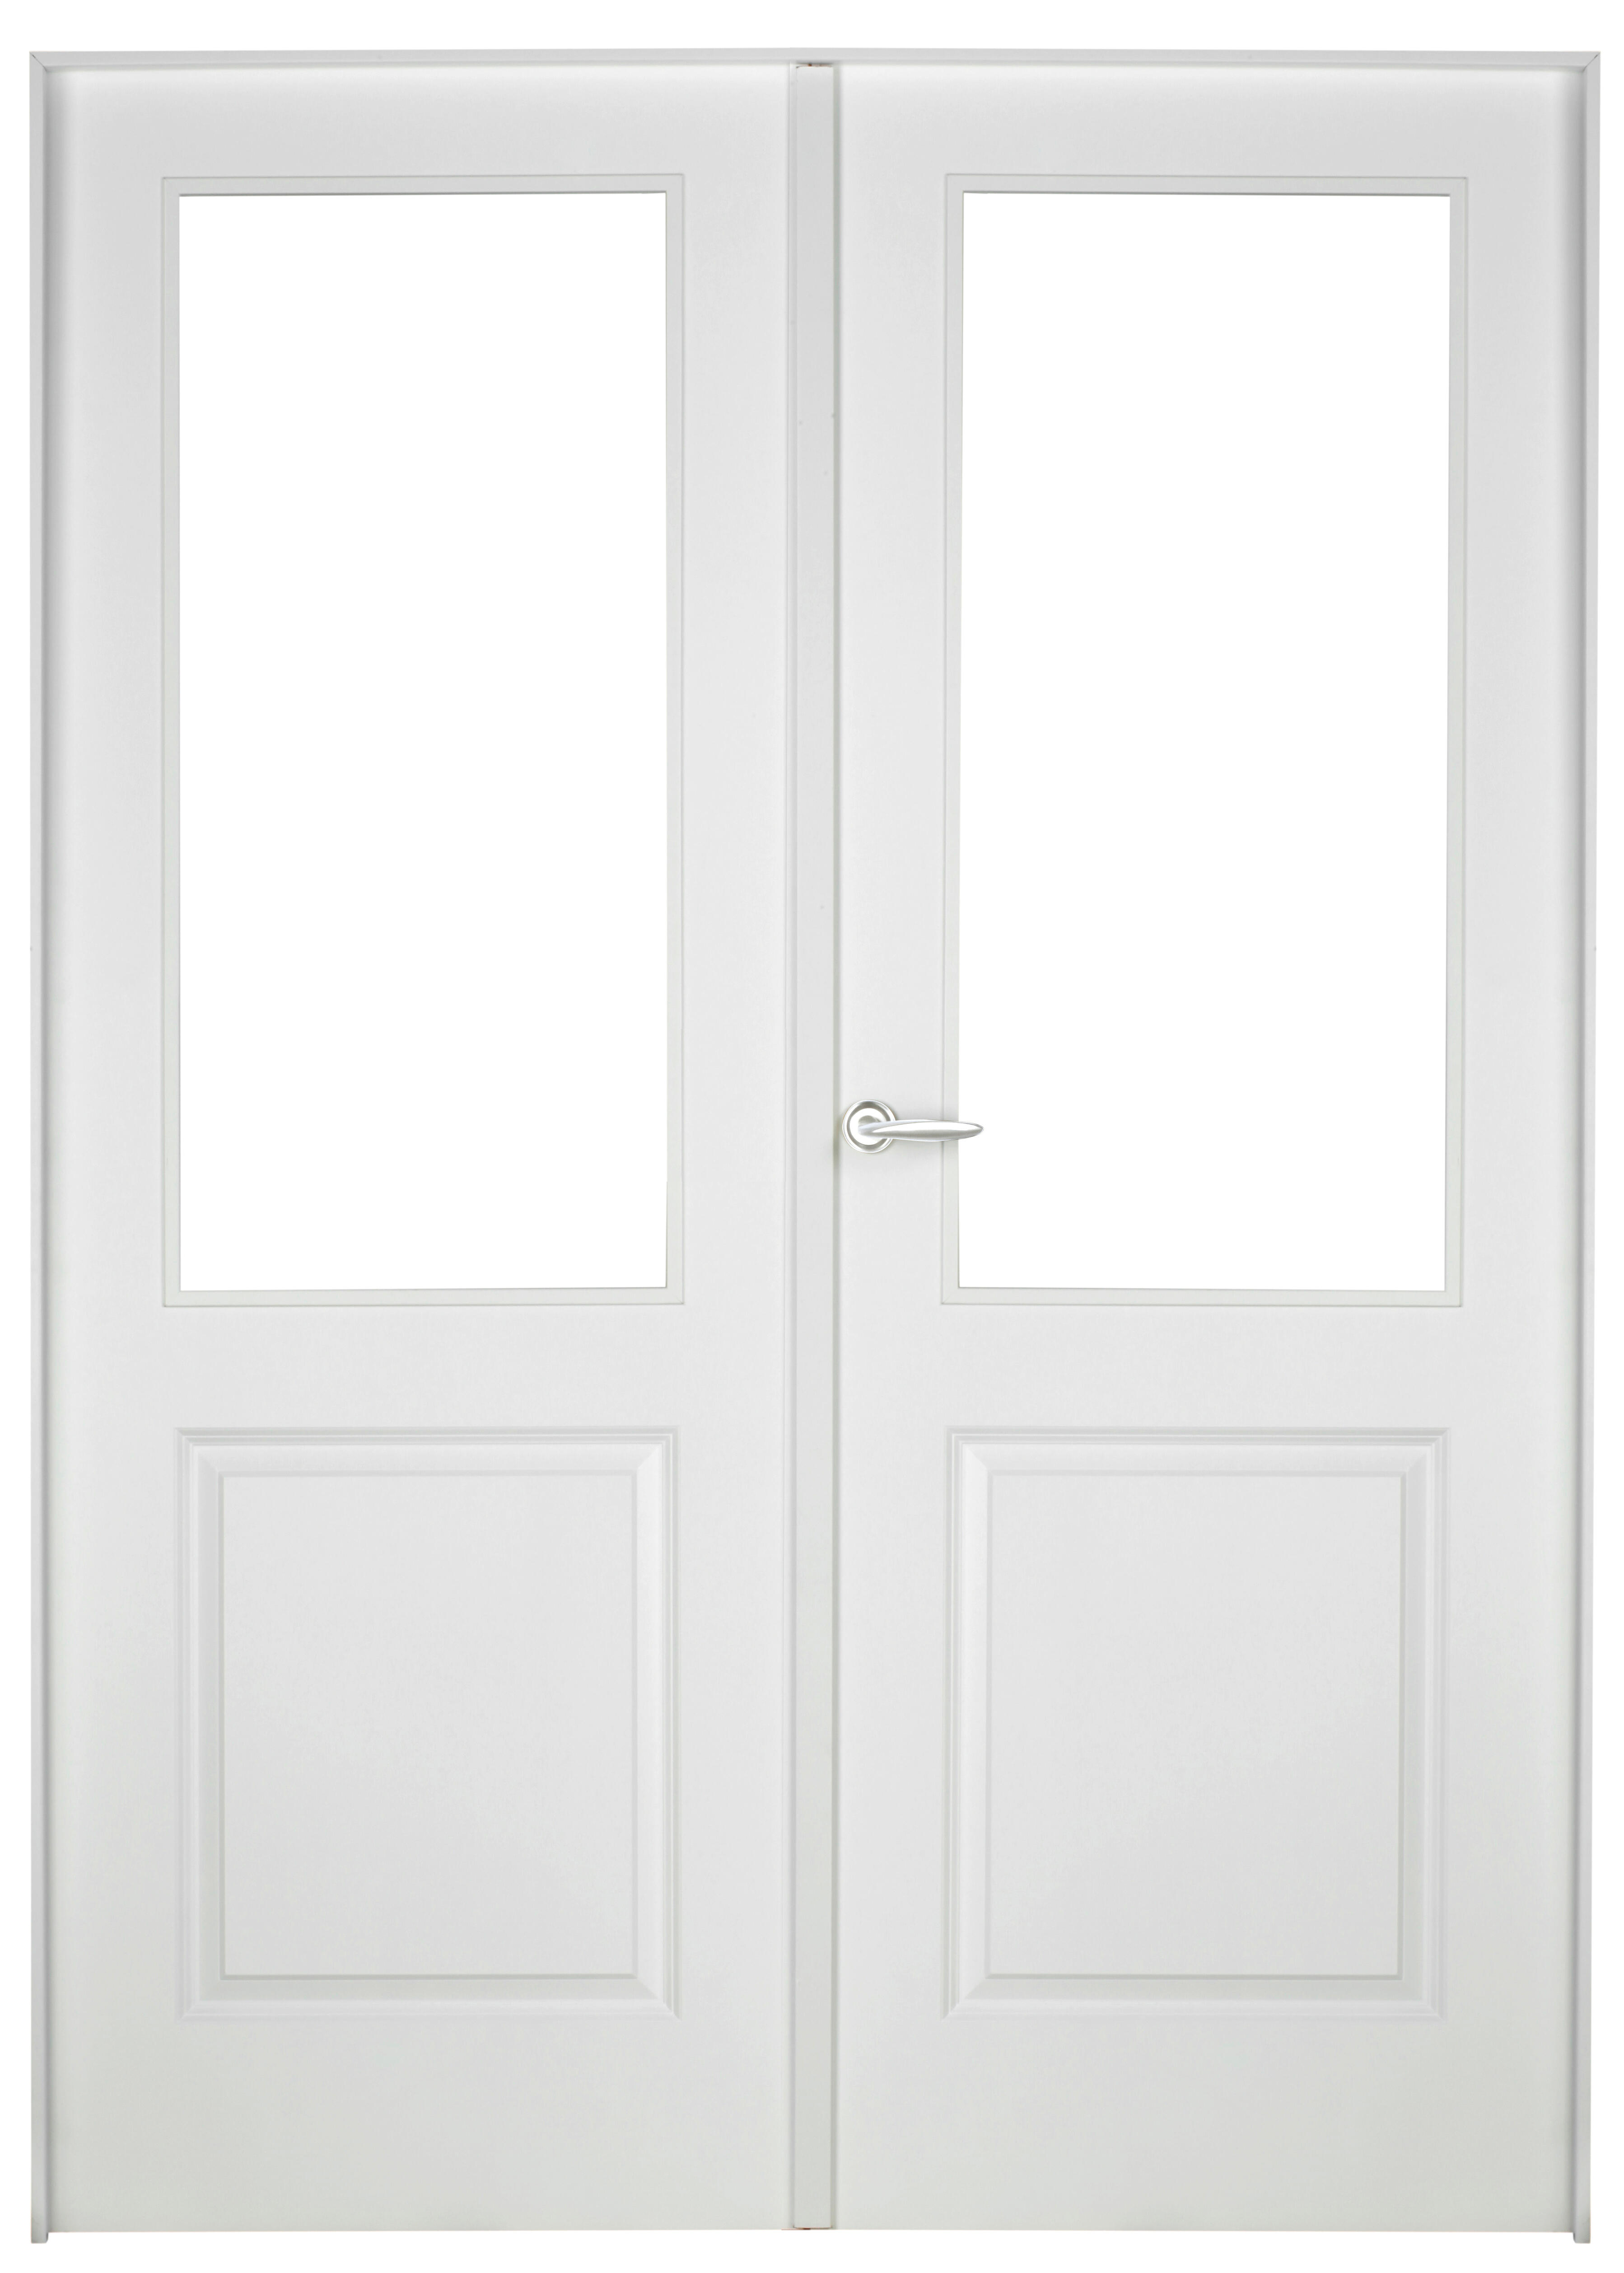 Puerta abatible bonn blanca aero blanco derecha con cristal de 110x30 y 125cm